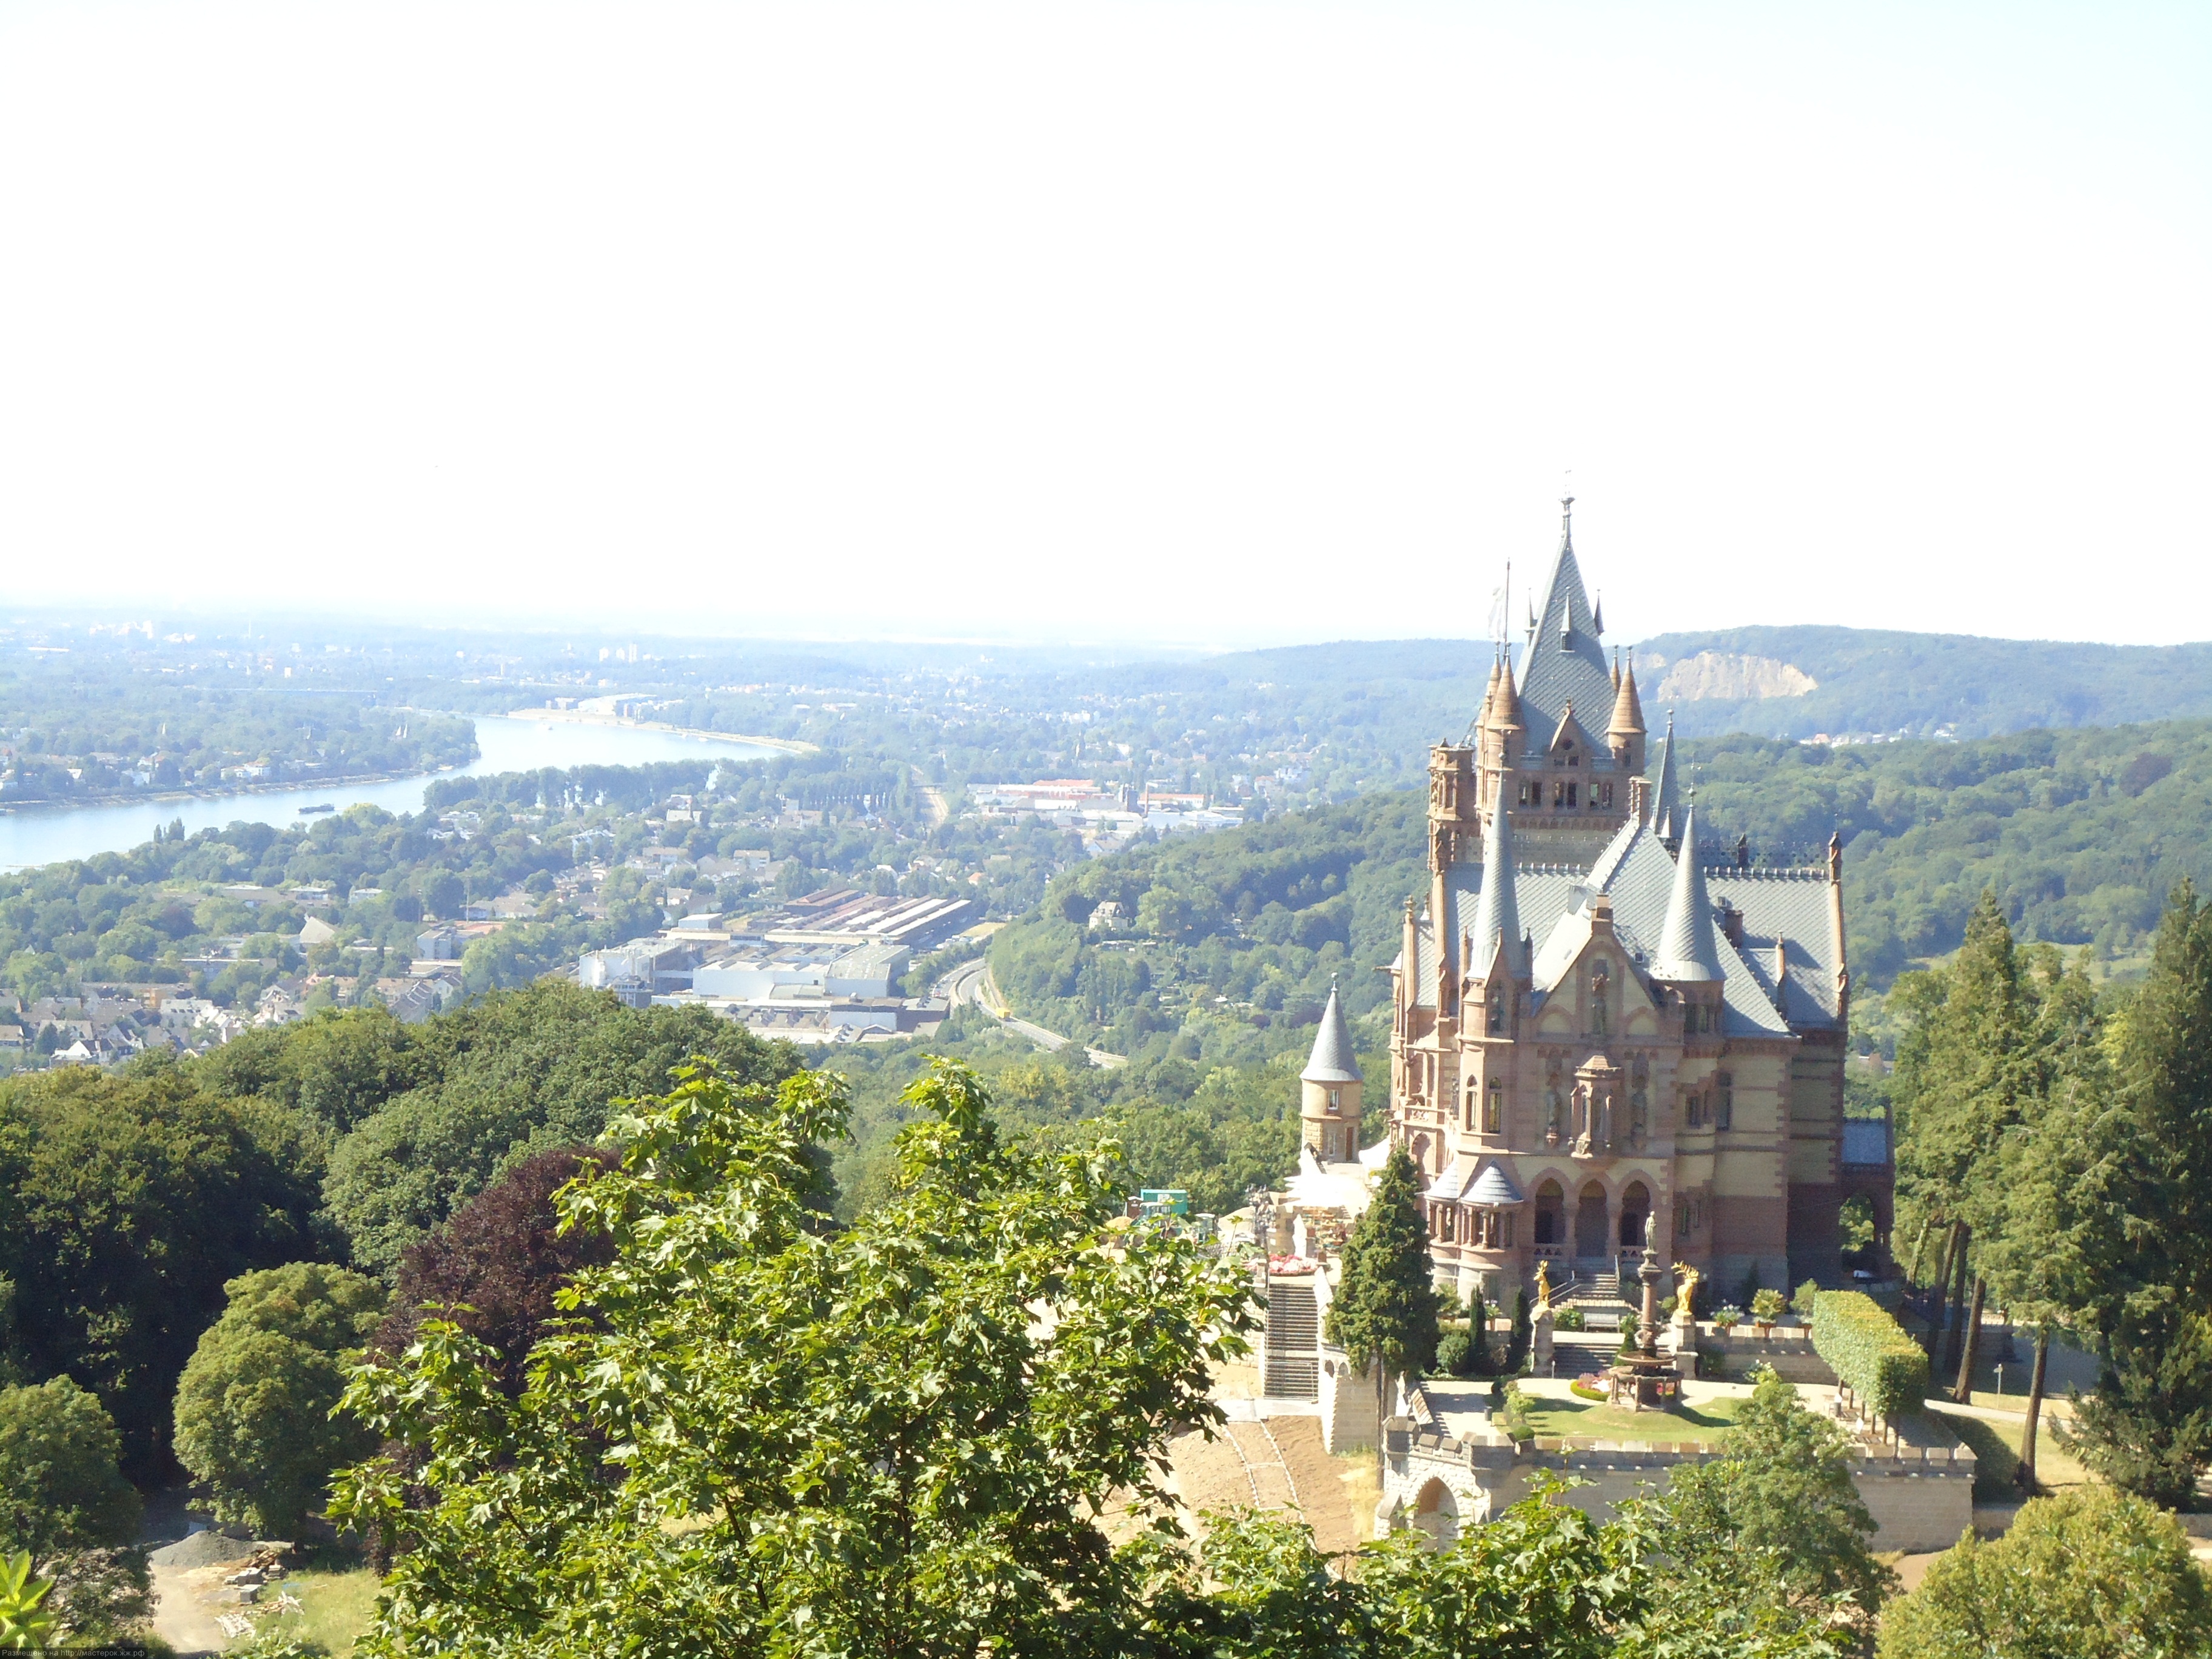 Siebengebirge, Blick von Remagen-Rolandswerth ueber den Rhein zum Schloss Drachenburg, Koenigswinter; View from Remagen-Rolandswert with Rhine river to castle Drachenburg, Koenigswinter